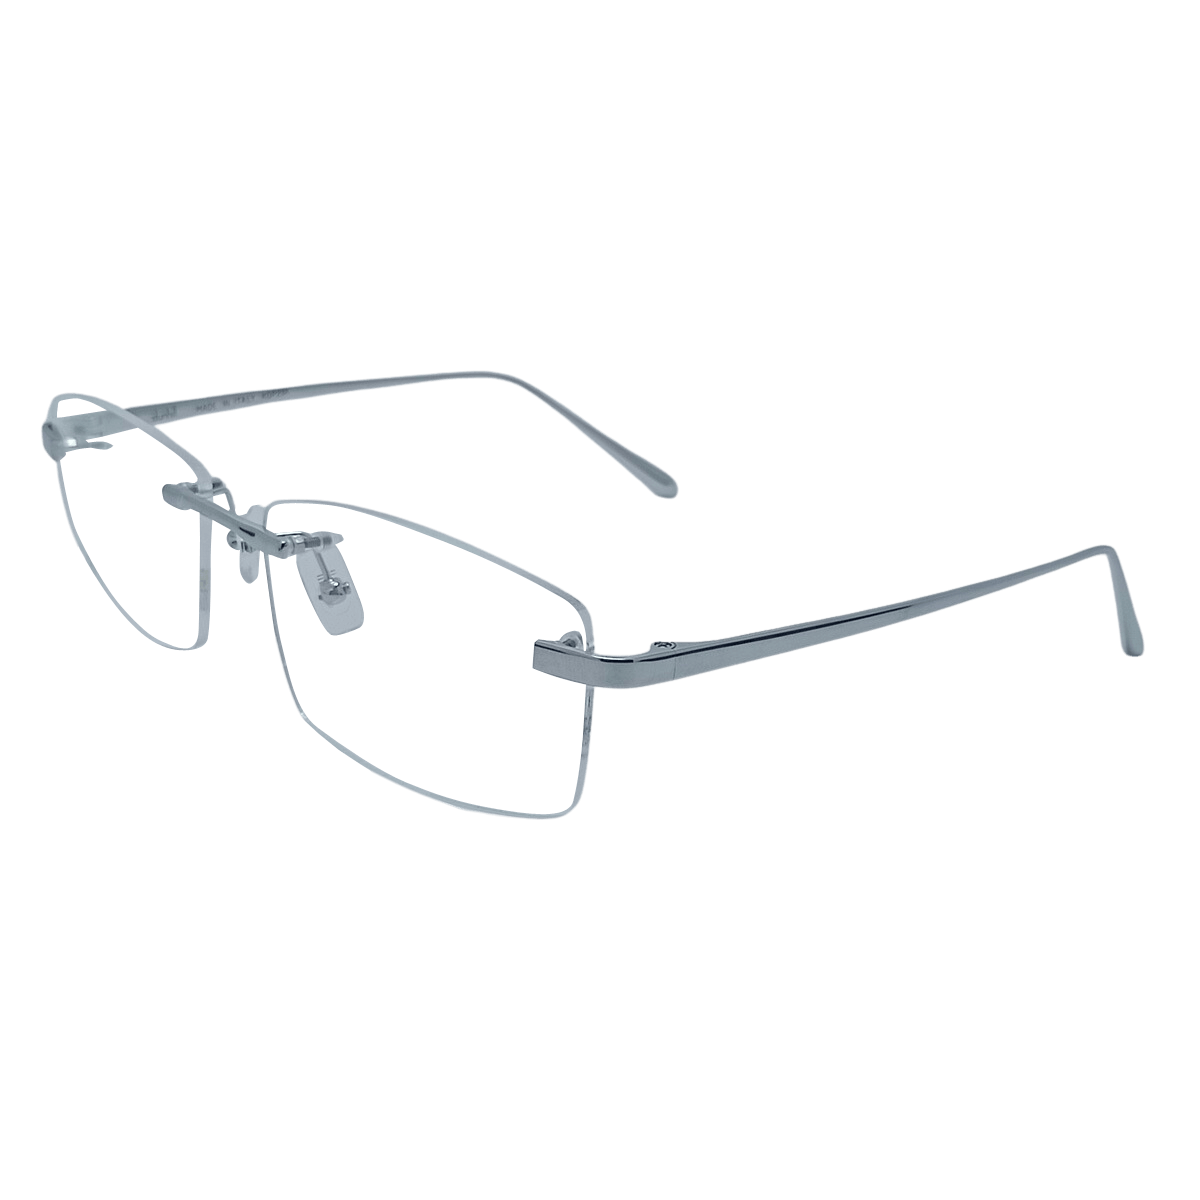 Buy Premium Quality Titanium Eyeglasses Frame from NineOptic.